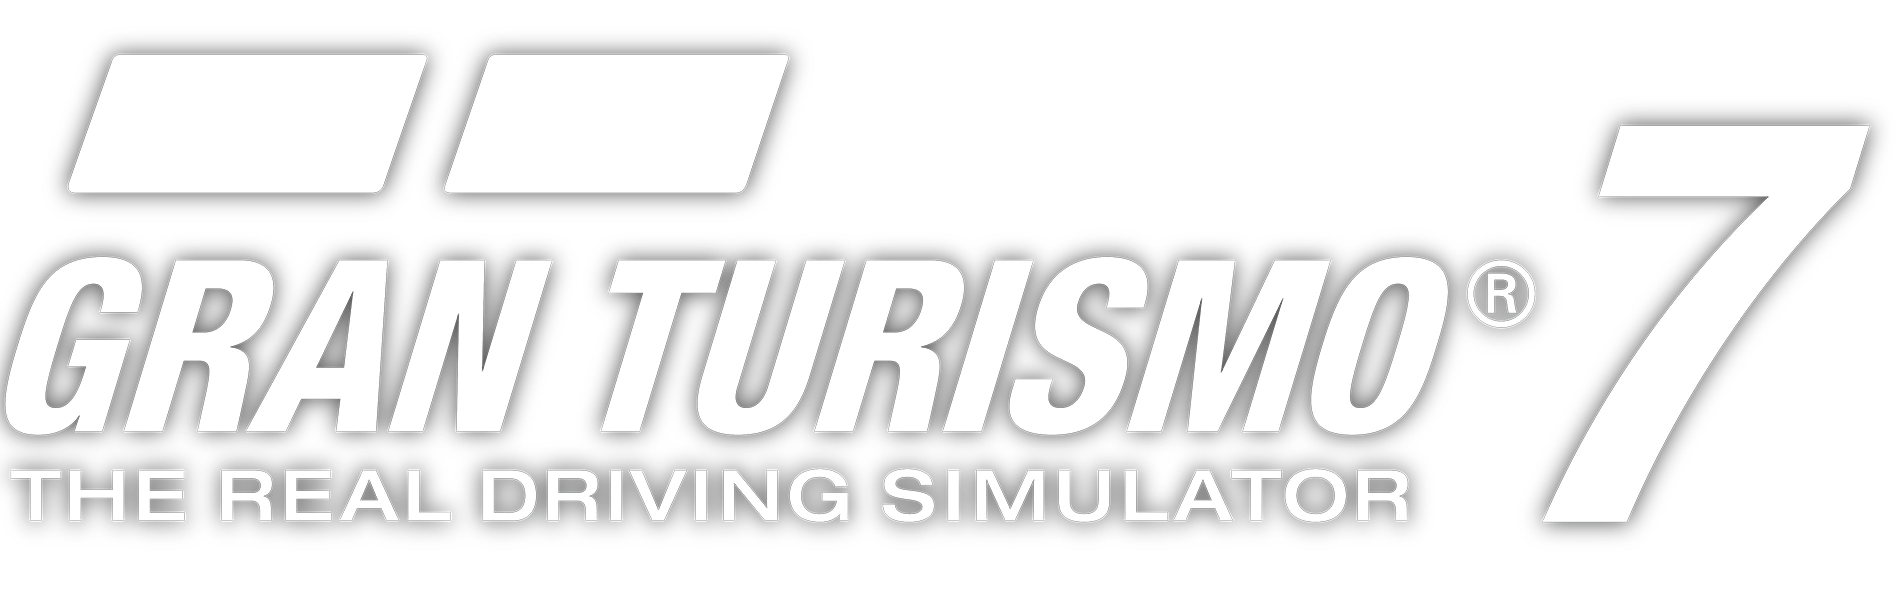 Logotipo Gran Turismo 7